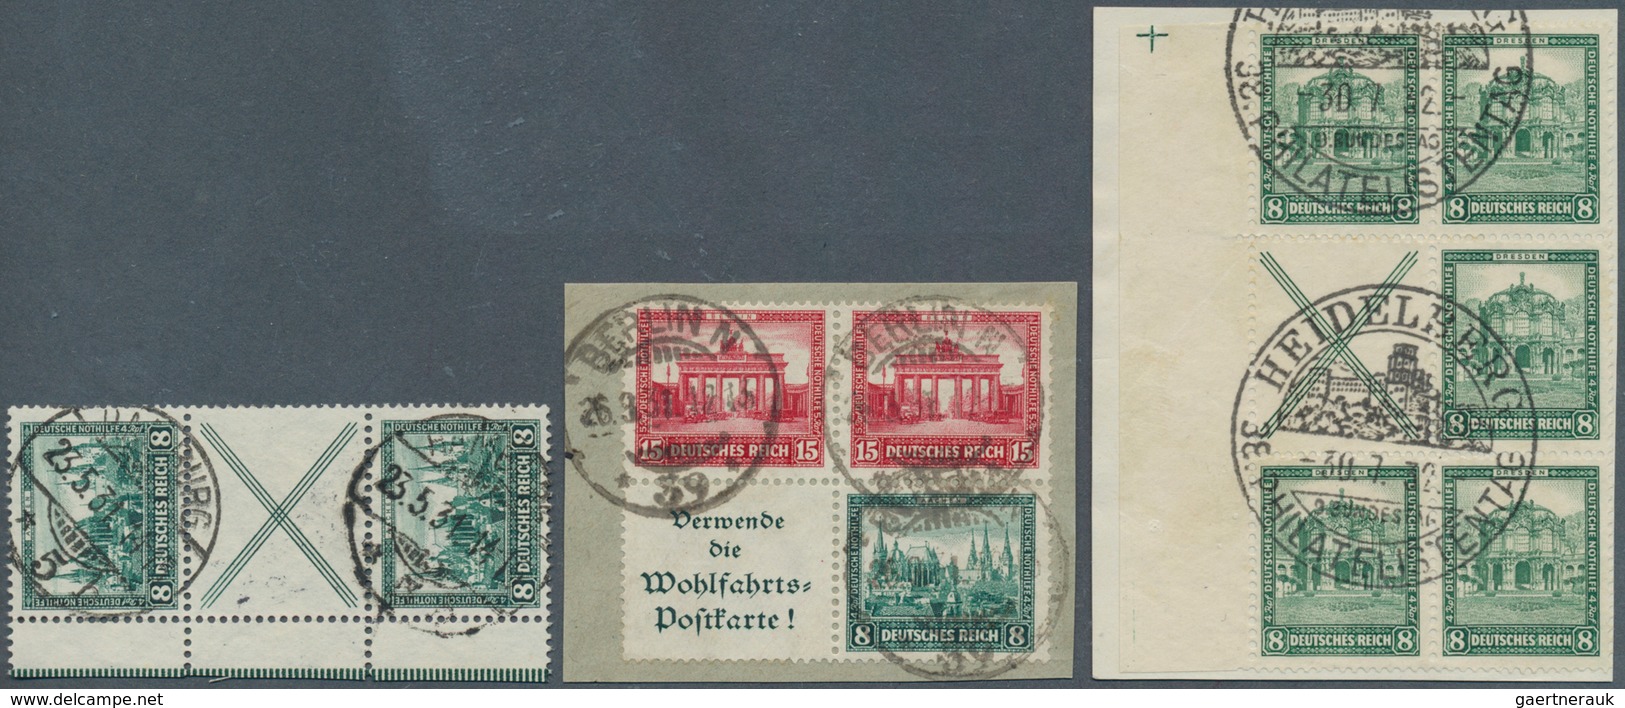 Deutsches Reich - Zusammendrucke: 1930, 8 Pfg. + X + 8 Pfg. Nothilfe, Senkrechter Zusammendruck, Not - Se-Tenant